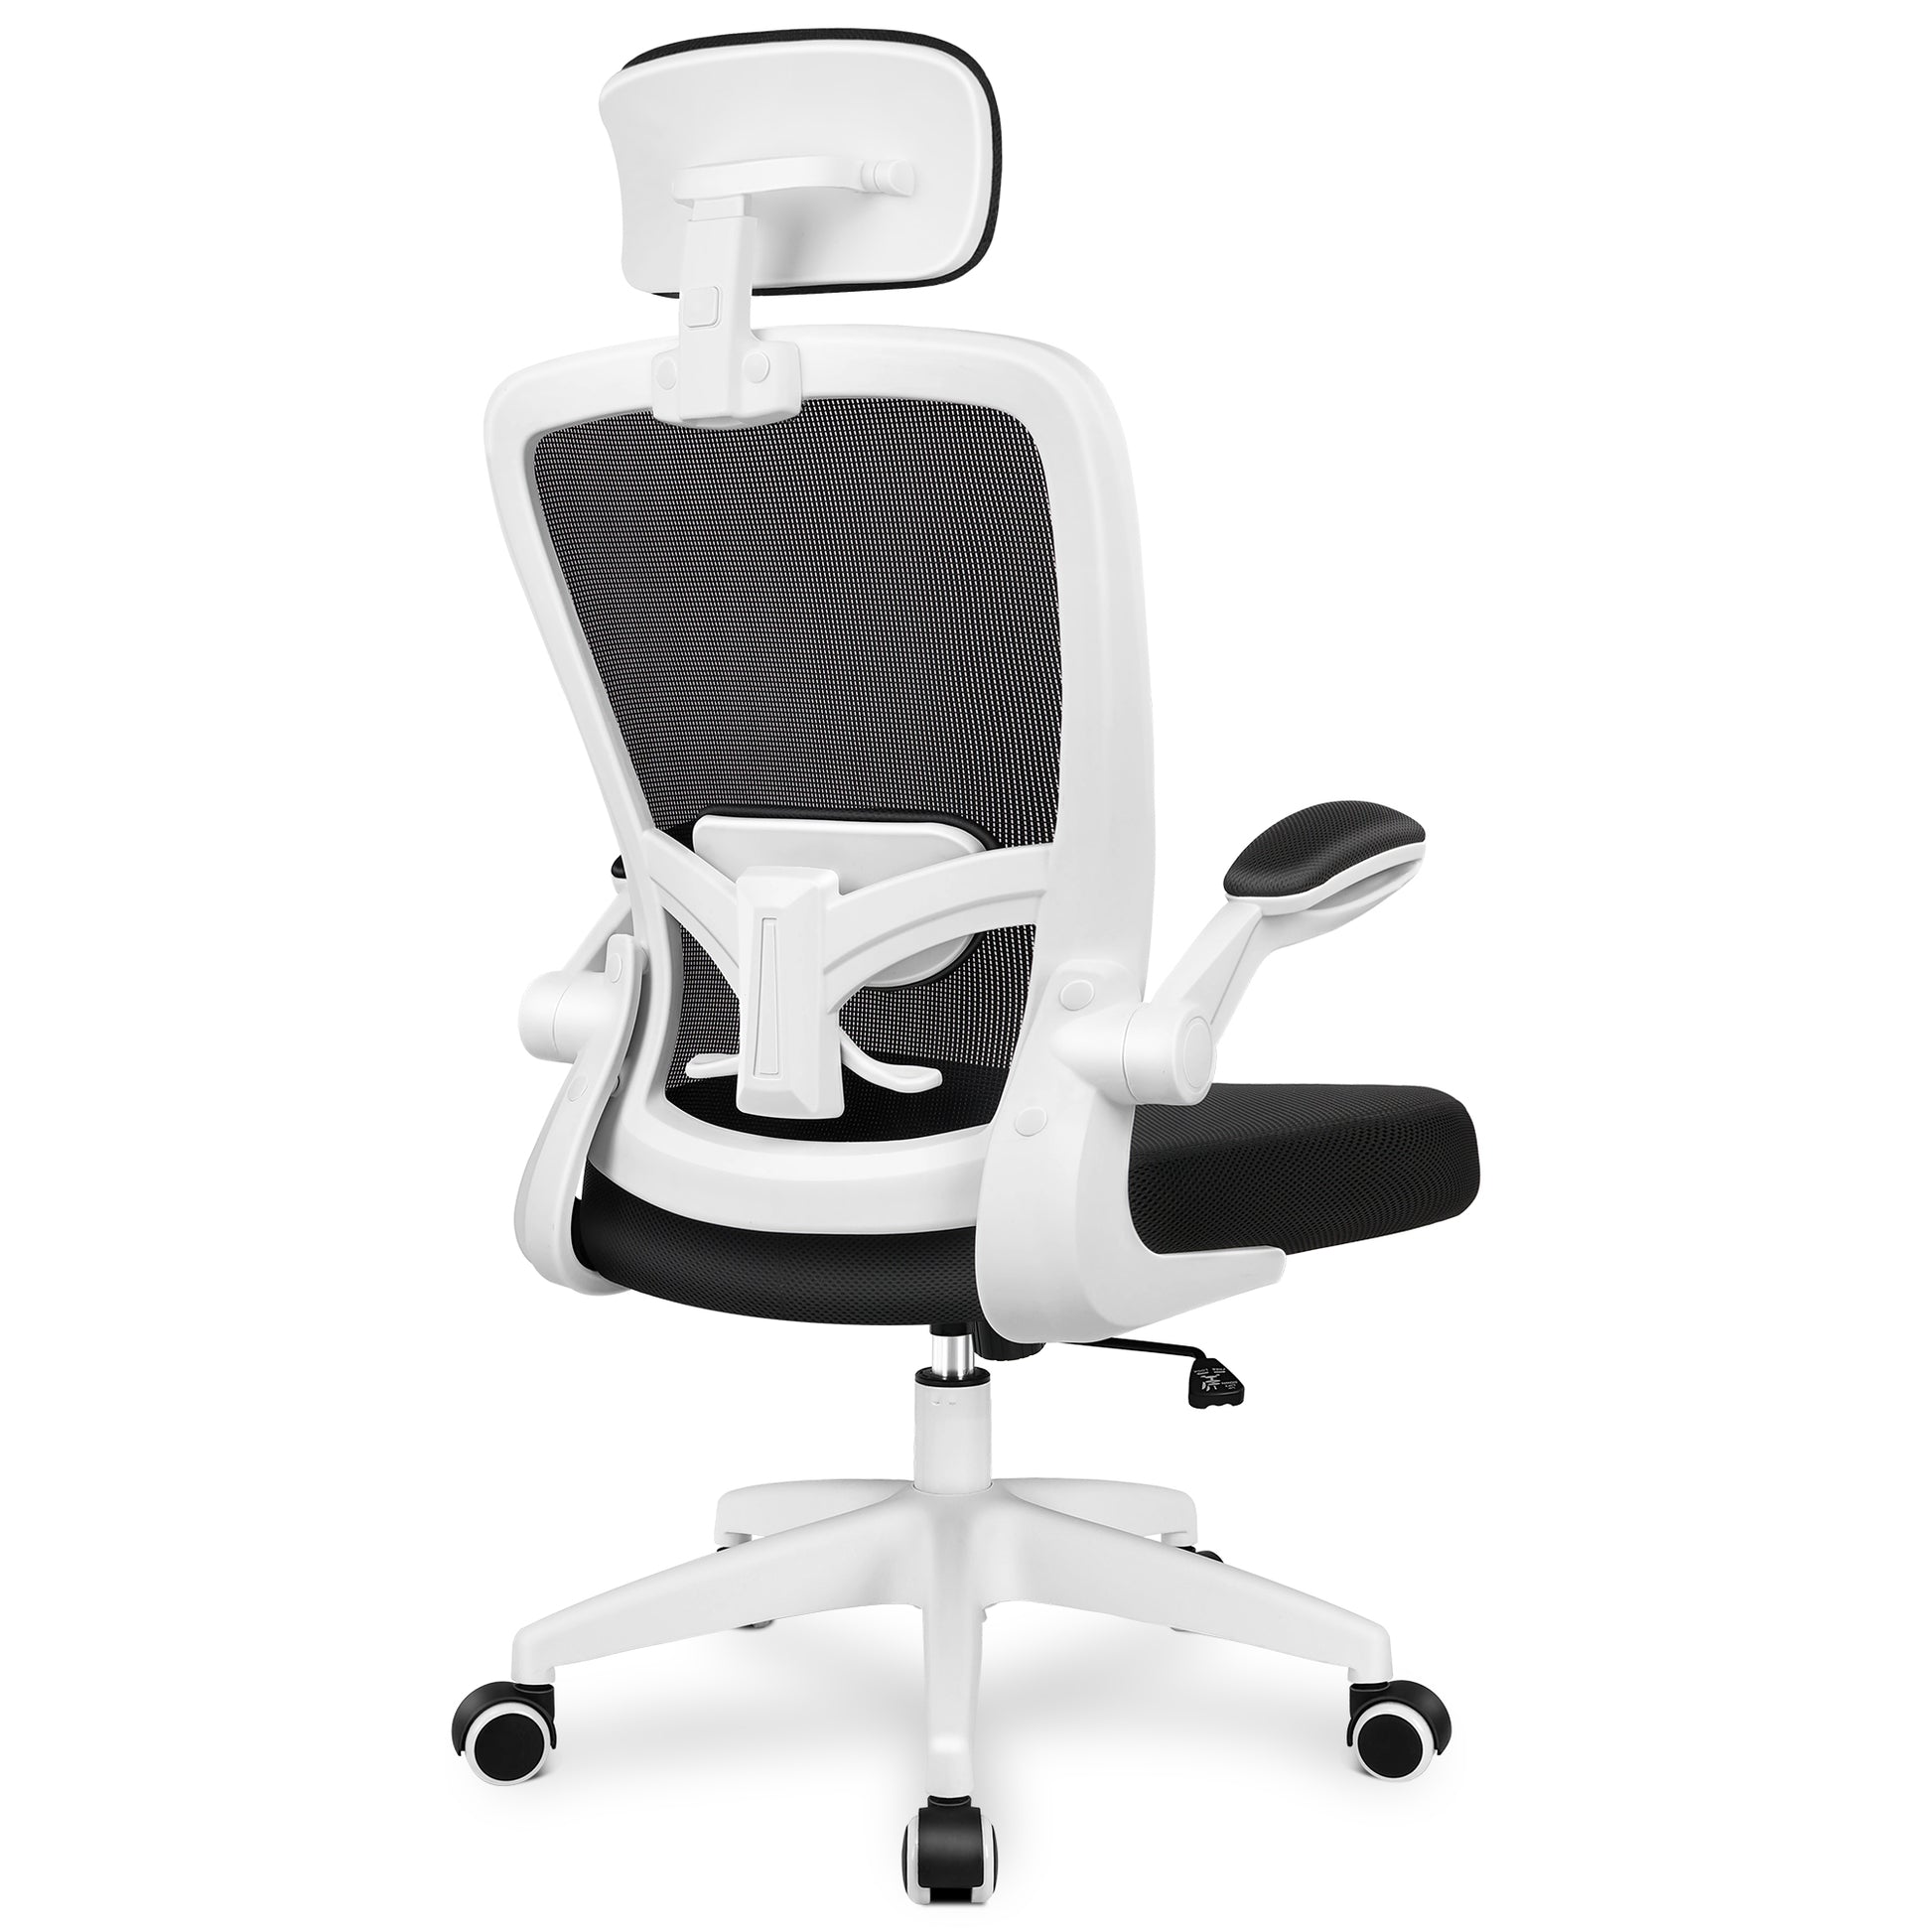 Ergonomic Office Chair Headrest Desk Chair with Adjustable Lumbar Support Light Blue